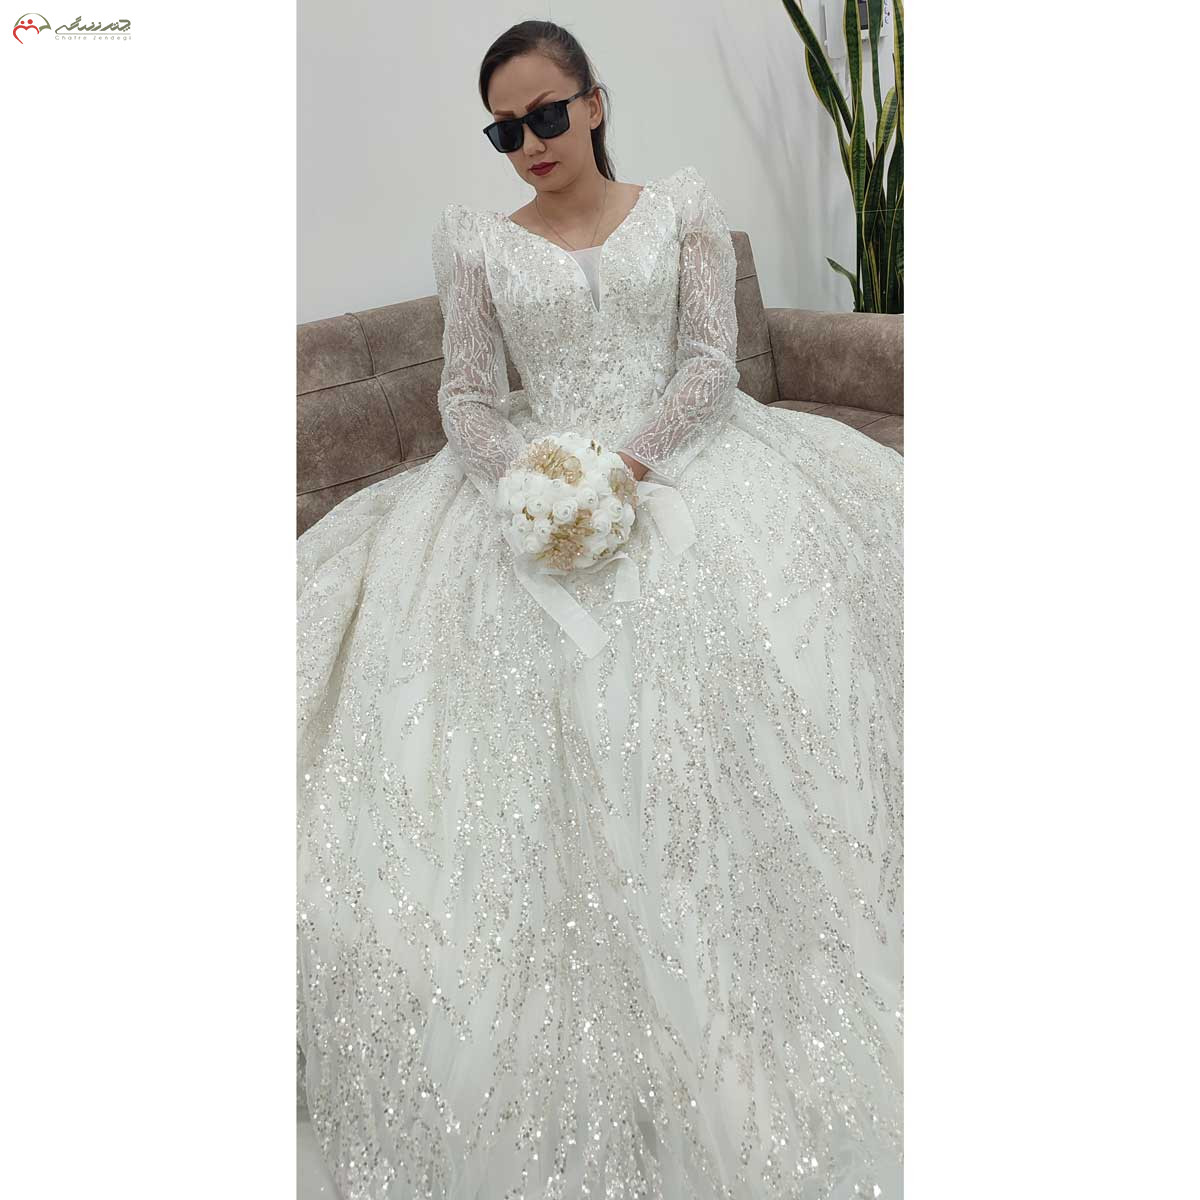 لباس عروس یقه دلبر با پارچه شاین پولک خطی و بالاتنه کار شده